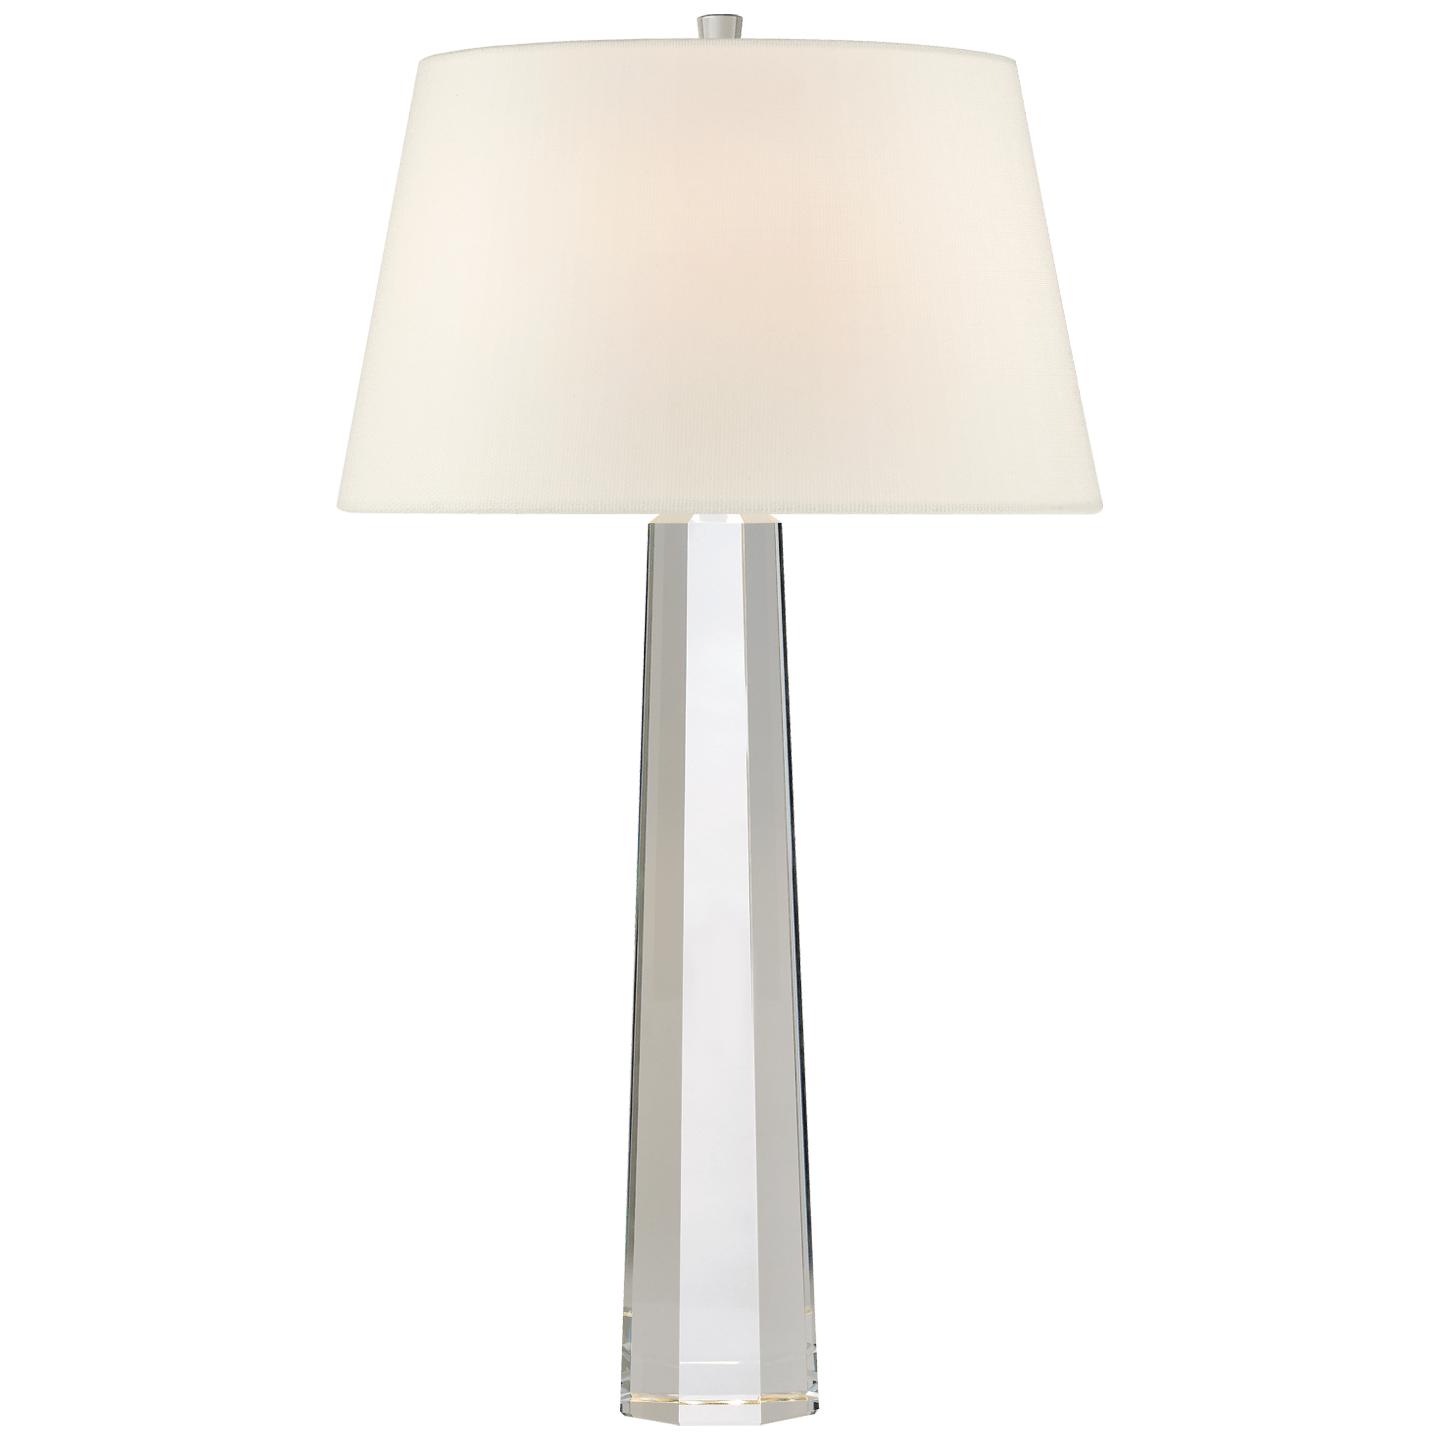 Купить Настольная лампа Octagonal Spire Large Table в интернет-магазине roooms.ru